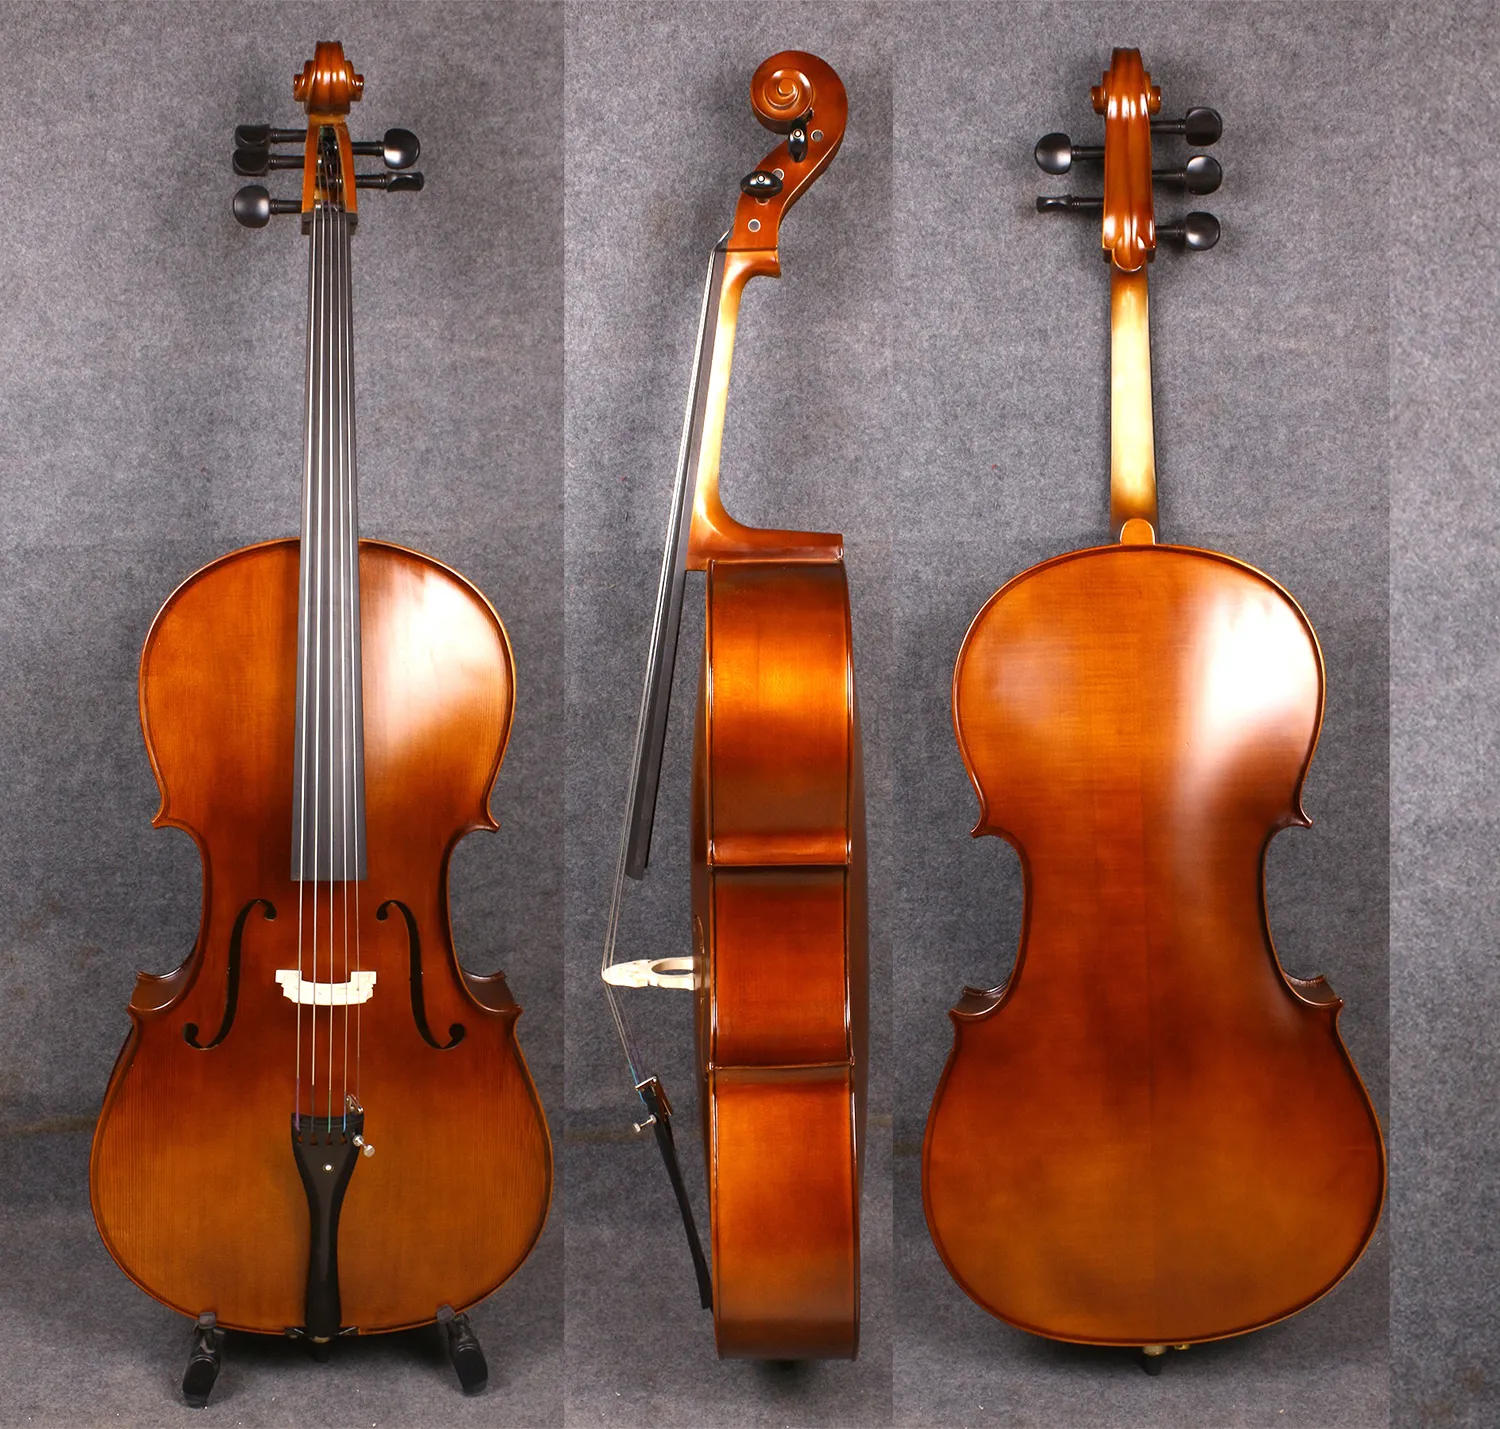 Yinfente 4/4 5-saitiges Cello in voller Größe, Fichte, Ahornholz, Ebenholz-Celloteile, inklusive Tasche, Bogen, handgefertigt